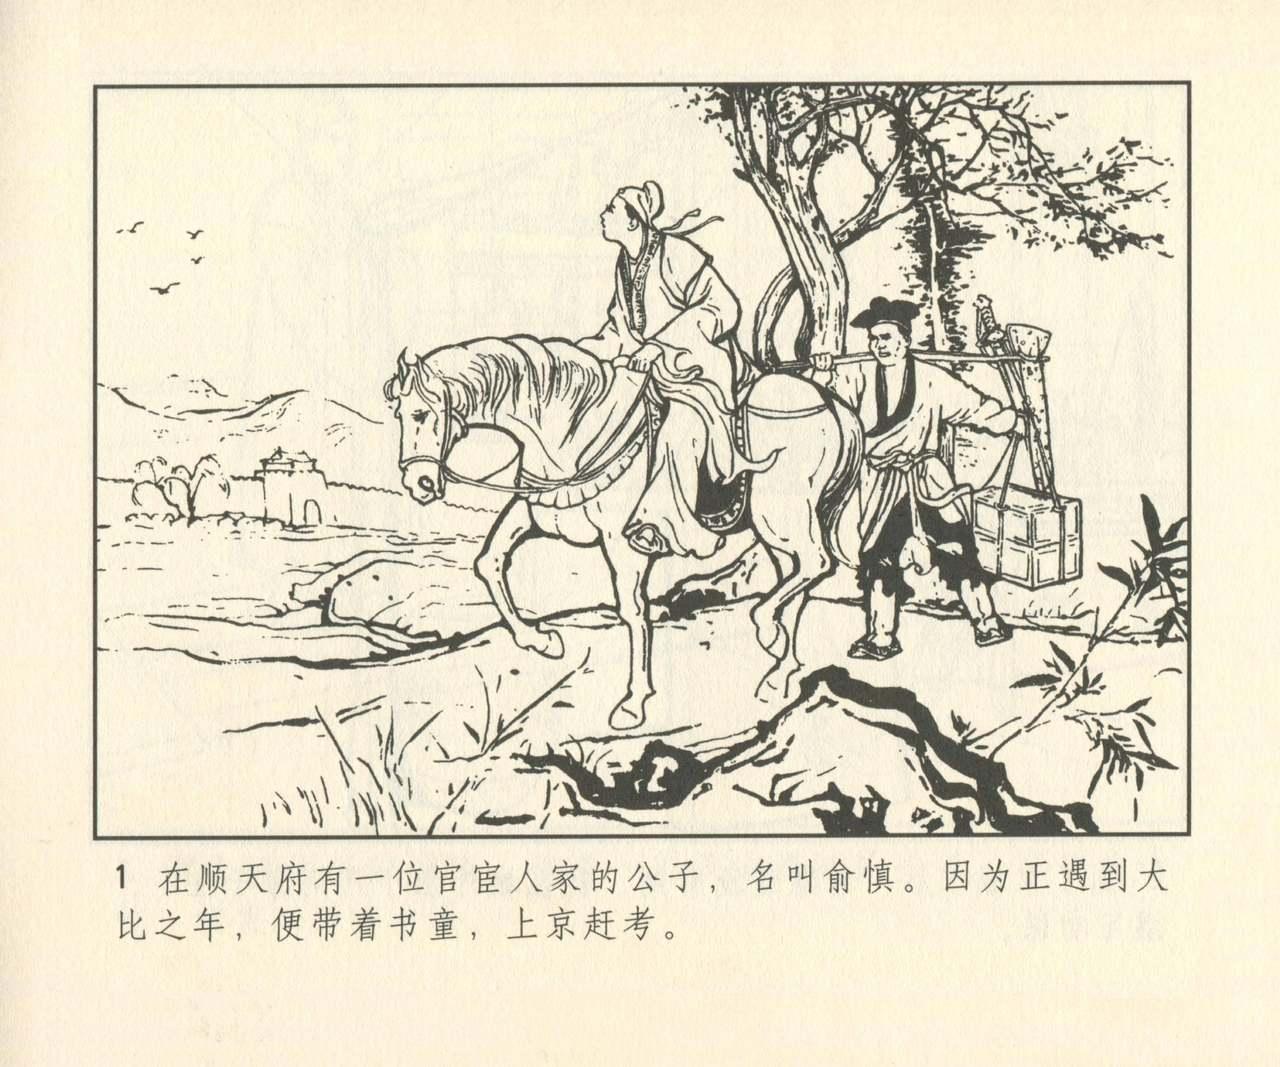 聊斋志异 张玮等绘 天津人民美术出版社 卷二十一 ~ 三十 281